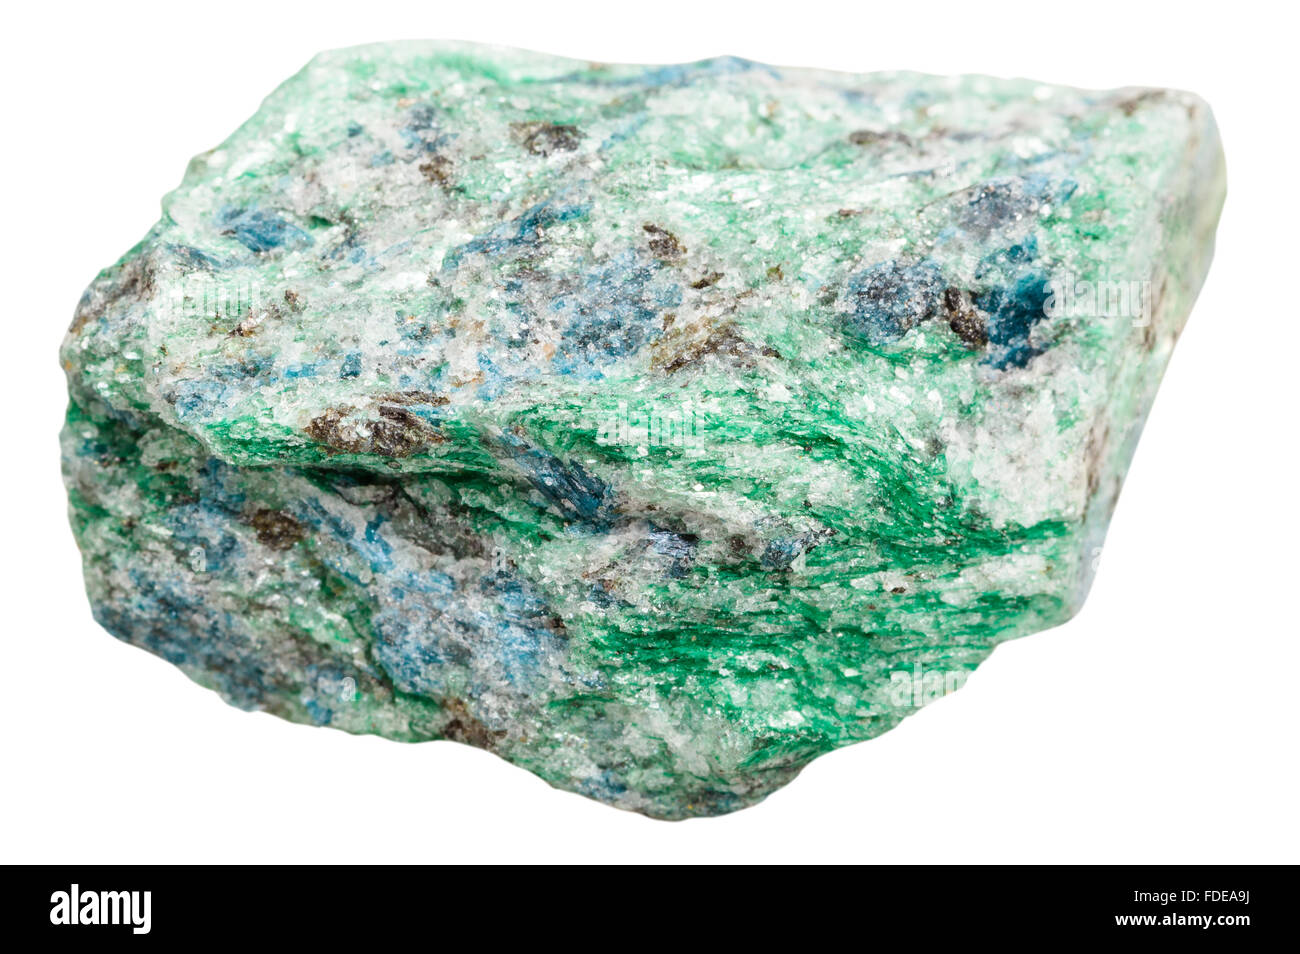 Makroaufnahmen Kollektion Naturstein - grüne Fuchsite (Chrom-Glimmer) Mineral Stein isoliert auf weißem Hintergrund Stockfoto